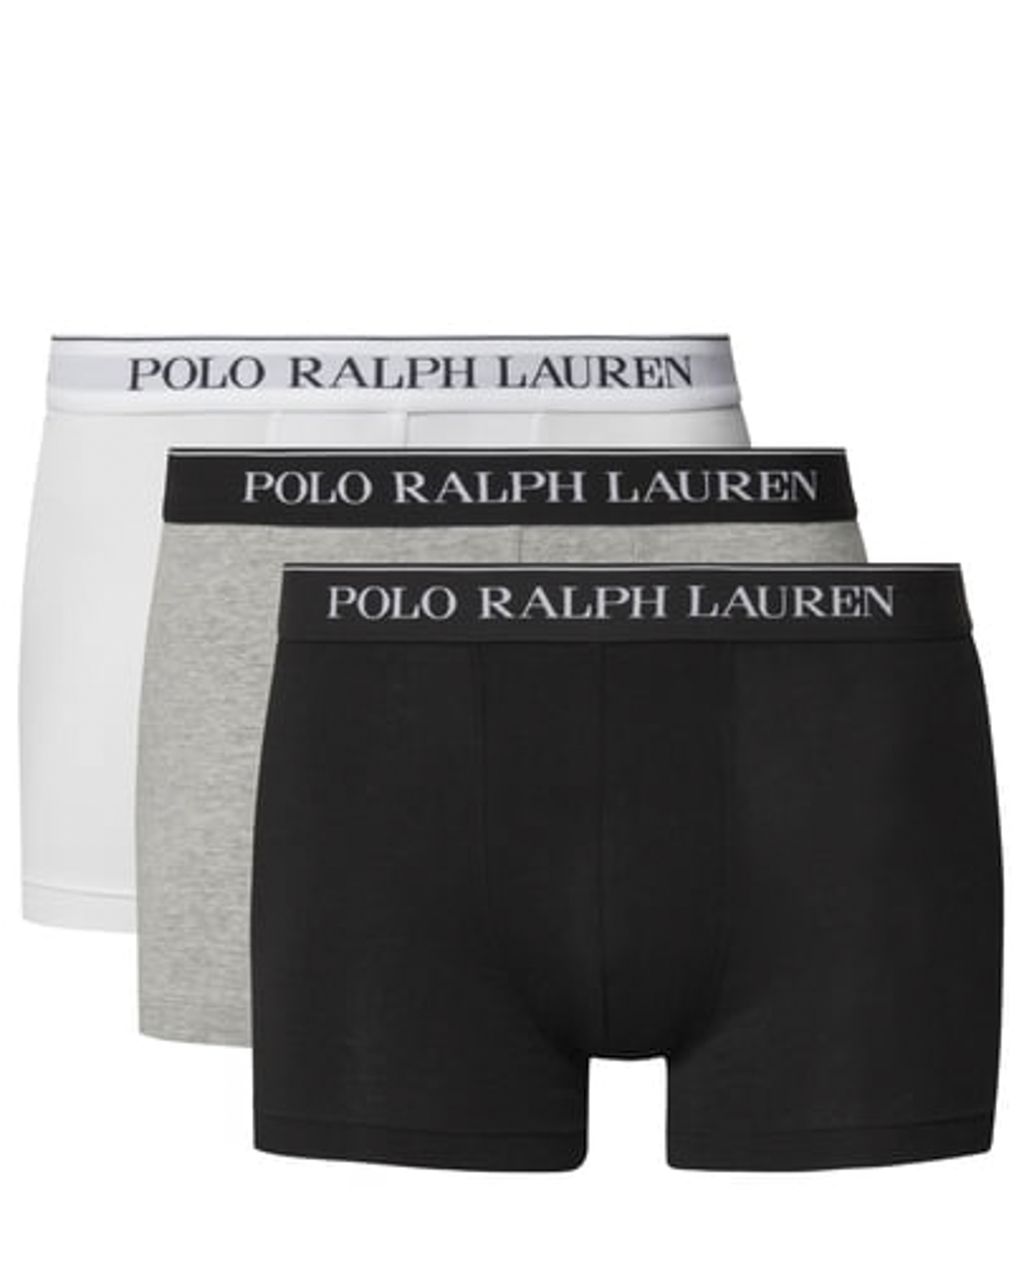 Polo Ralph Lauren Boxershort Zwart 078601-001-L